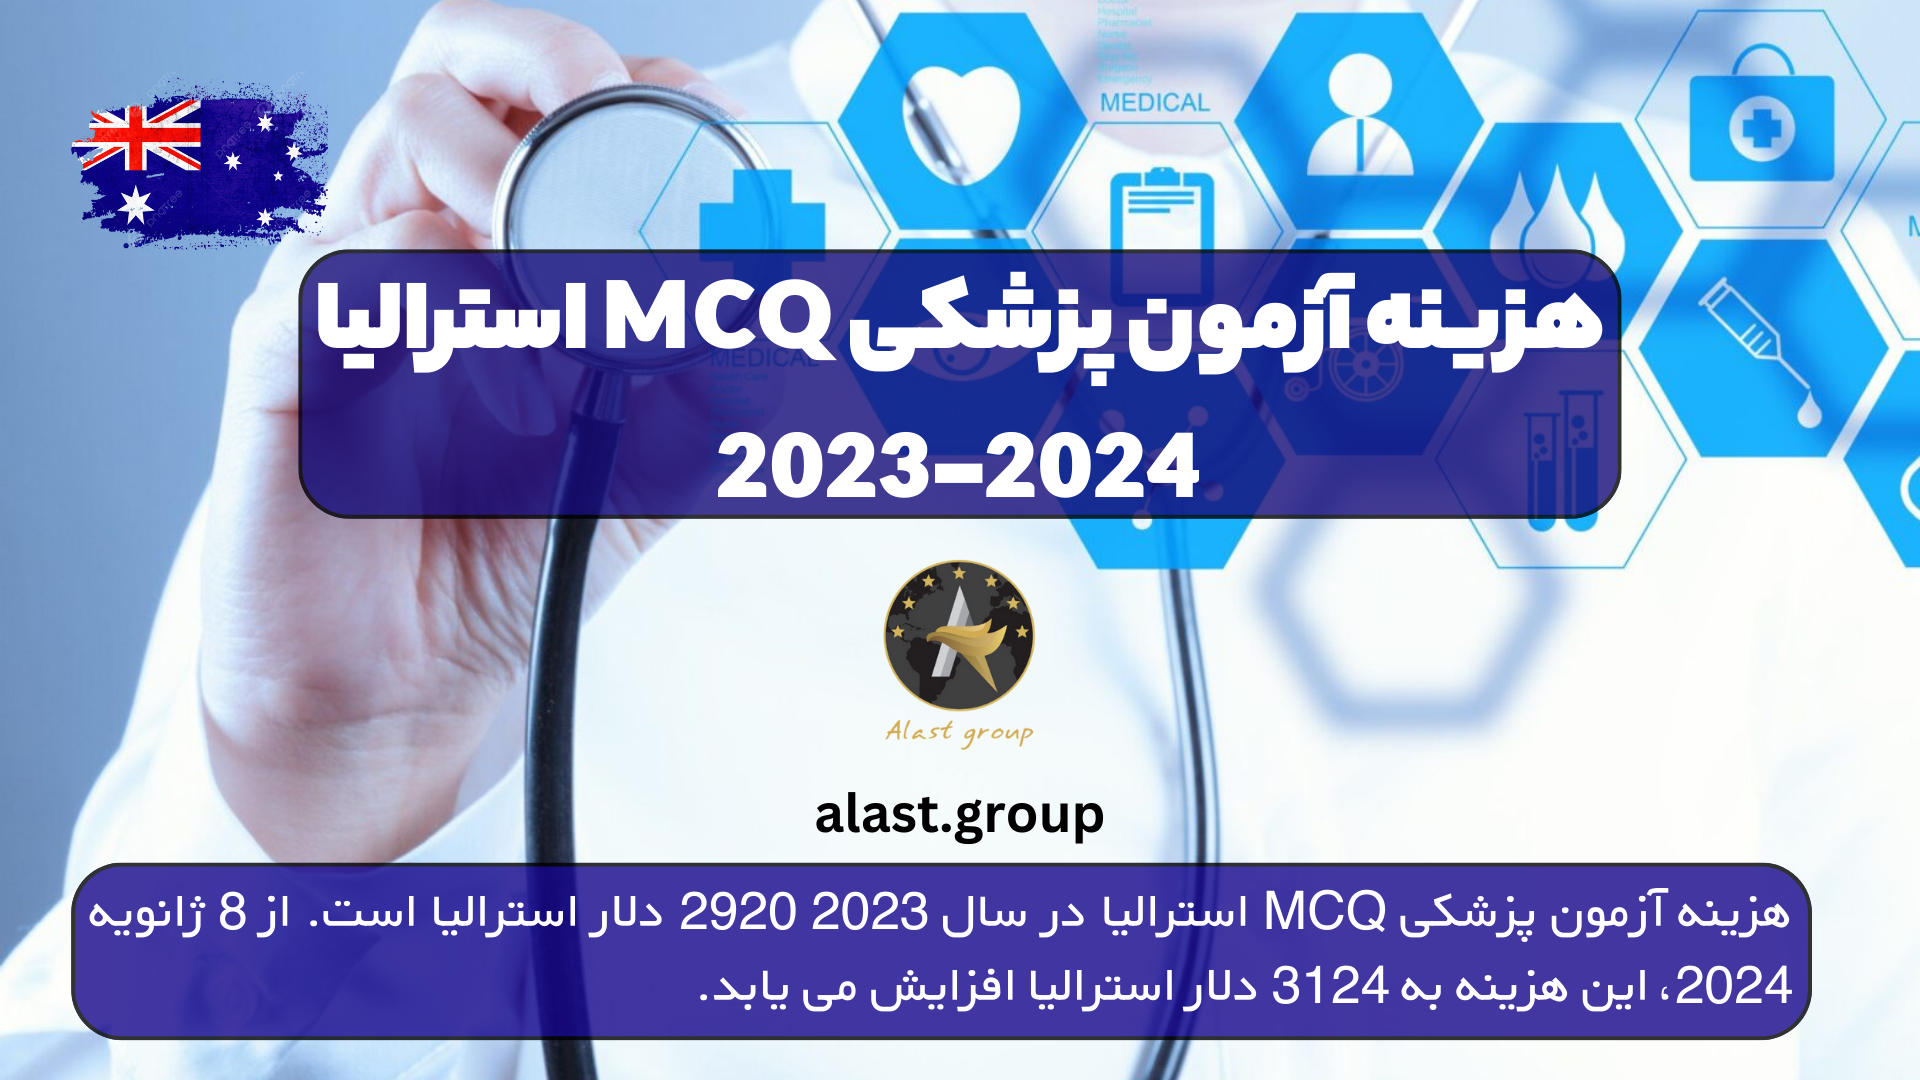 هزینه آزمون پزشکی MCQ استرالیا 2023-2024